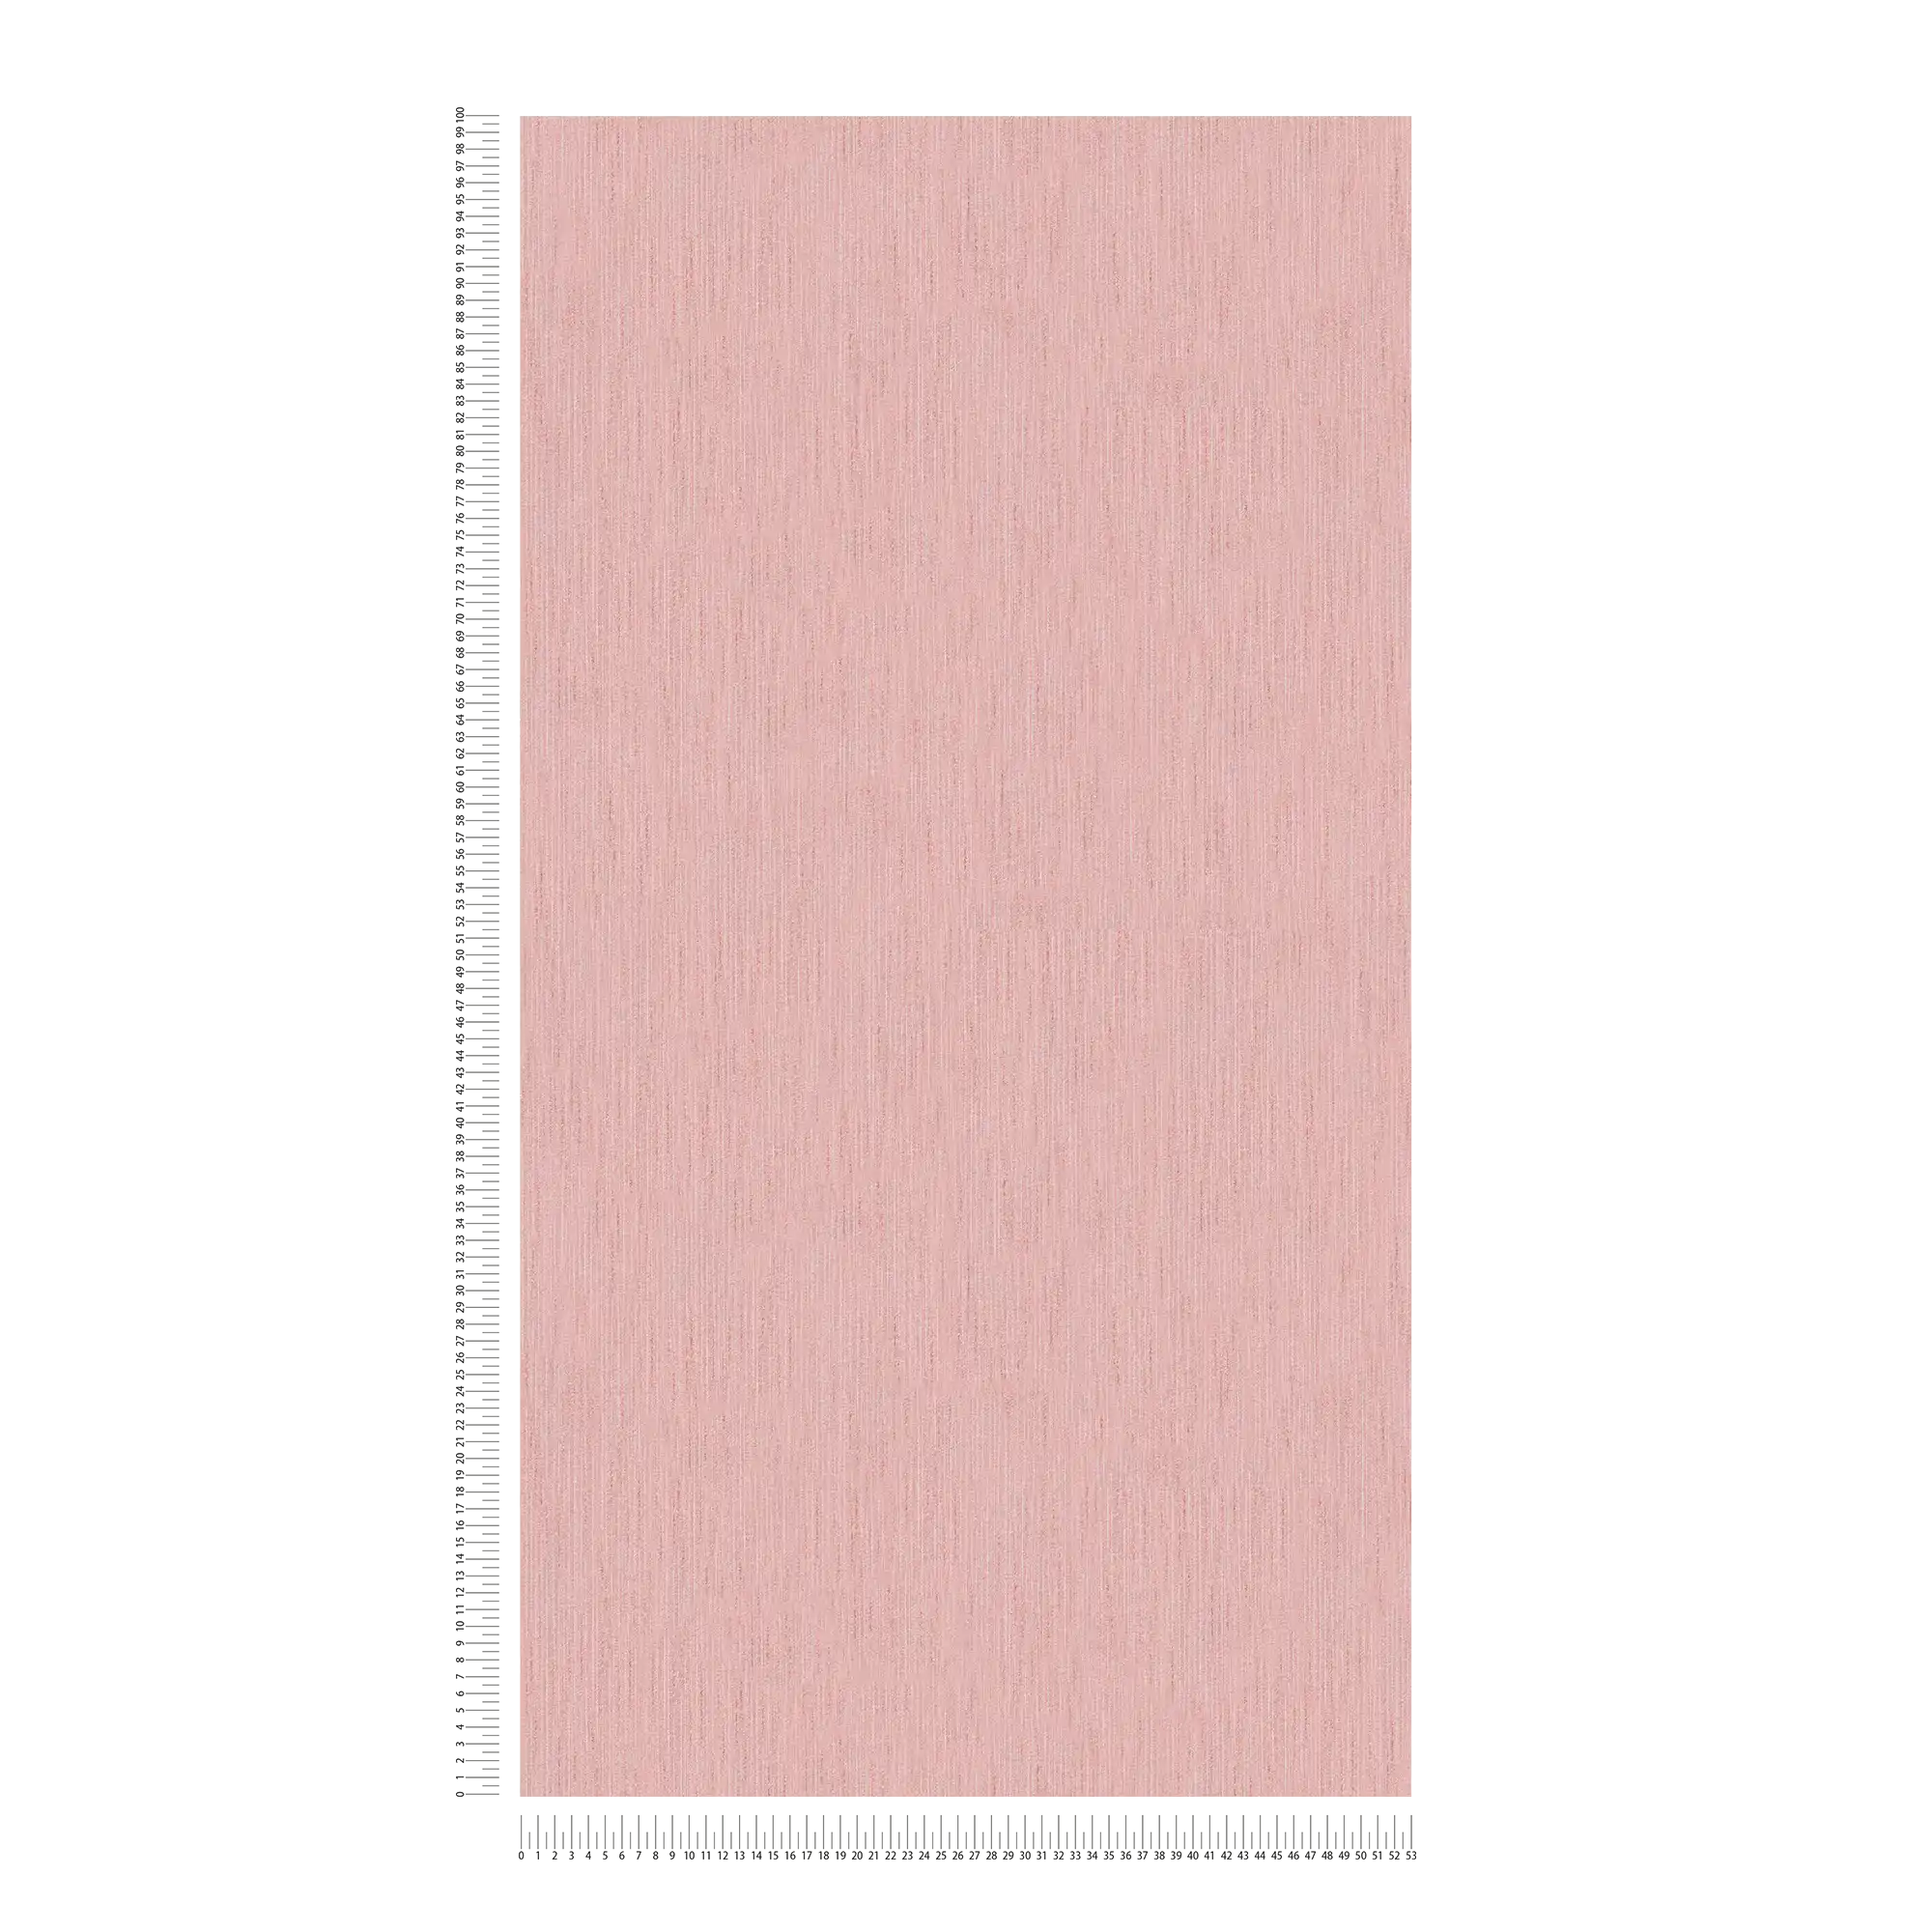             Oud roze behang effen gevlekt met structuureffect
        